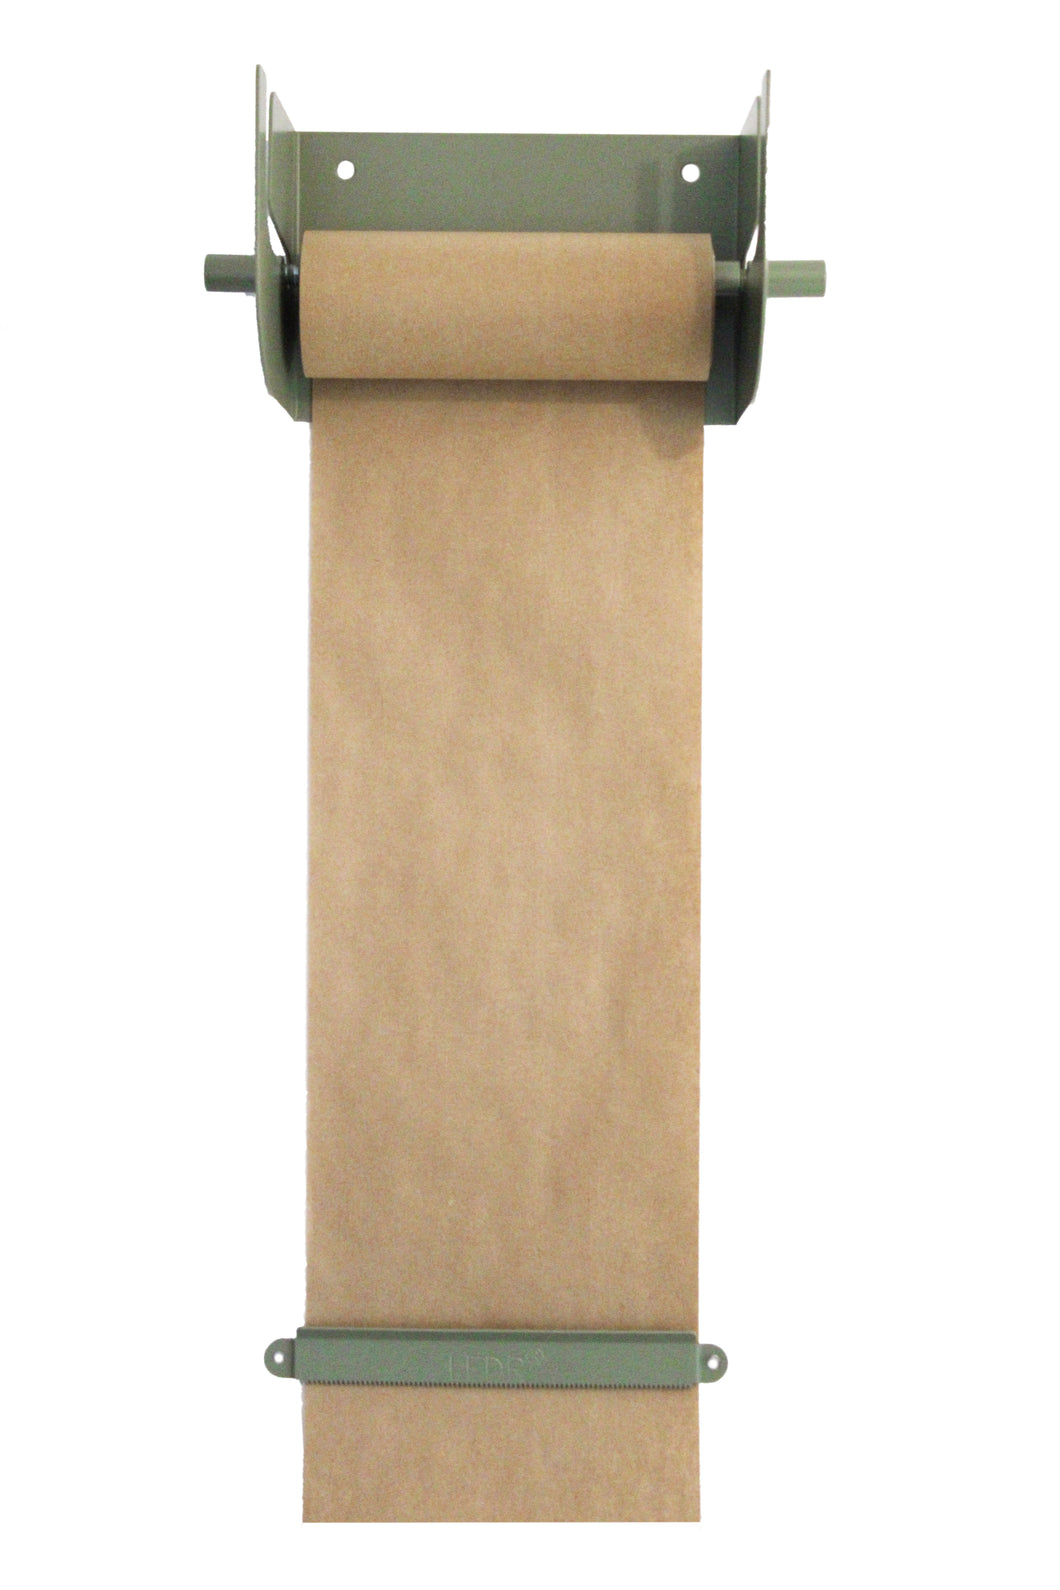 Kraftpapier Rollenhalter Wanddekoration Green, Größe M 20 x 15 cm inklusive Papierrolle 20 Meter und Montagematerial